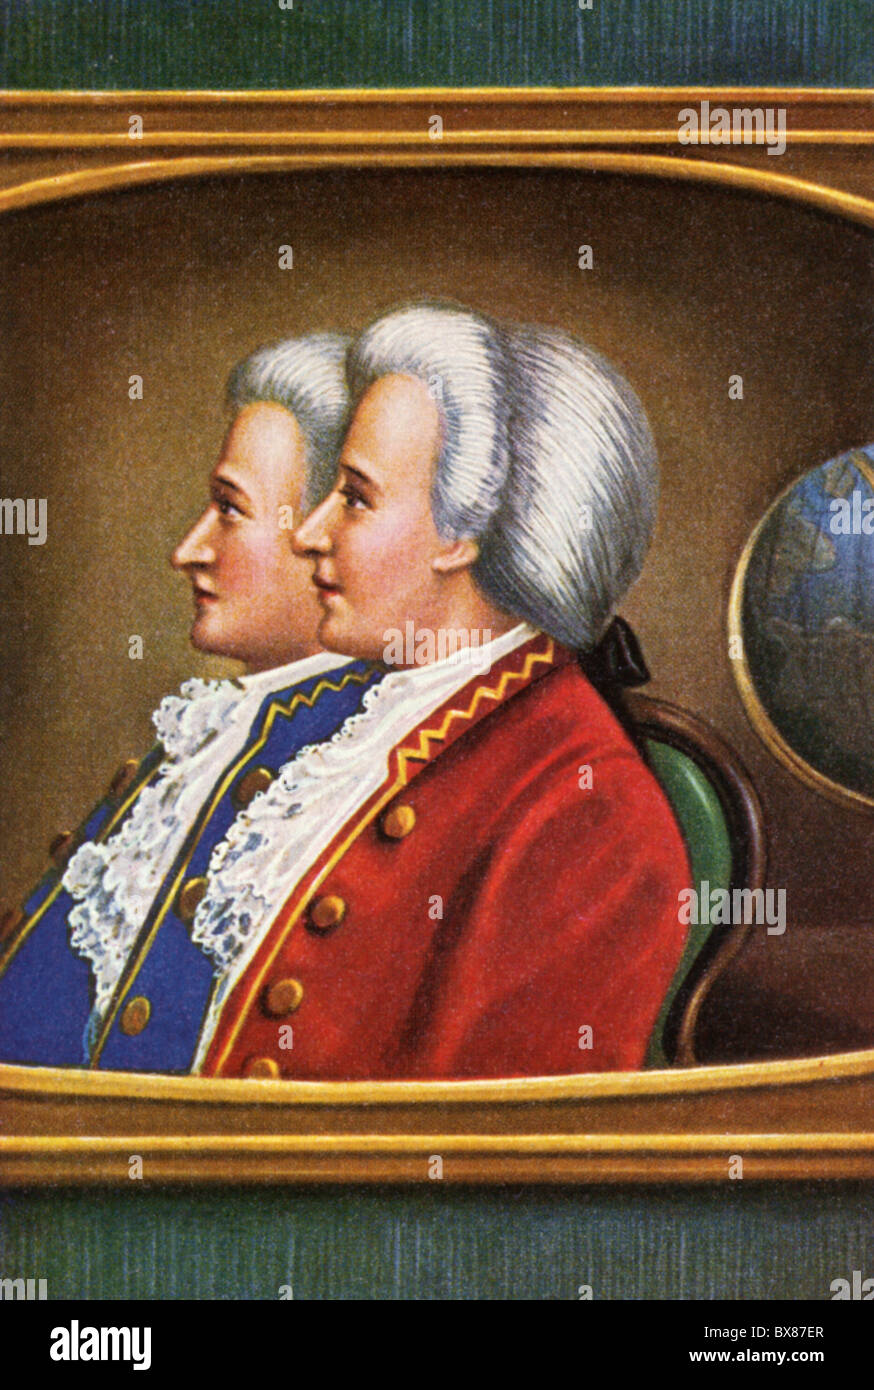 Montgolfier, Joseph Michel (26.8.1740 - 26.6.1810) e Jacques Etienne (6.1.1745 - 2.8.1799), inventori francesi, doppio ritratto, Foto Stock